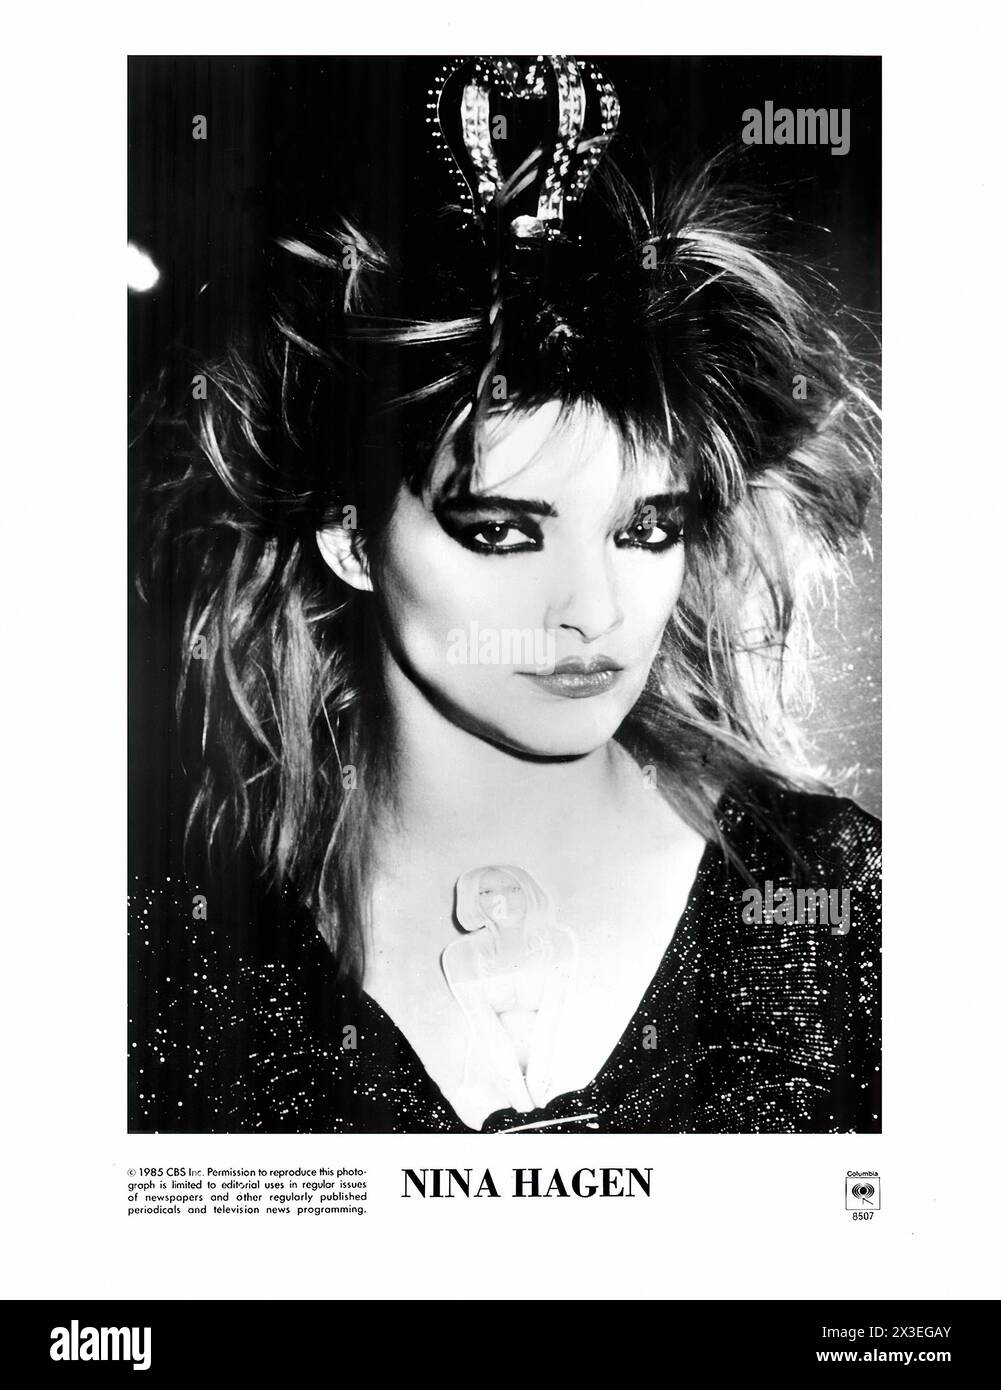 Nina Hagen photo de presse - photo promotionnelle du label de musique vintage - photographe inconnu, pour usage éditorial seulement Banque D'Images